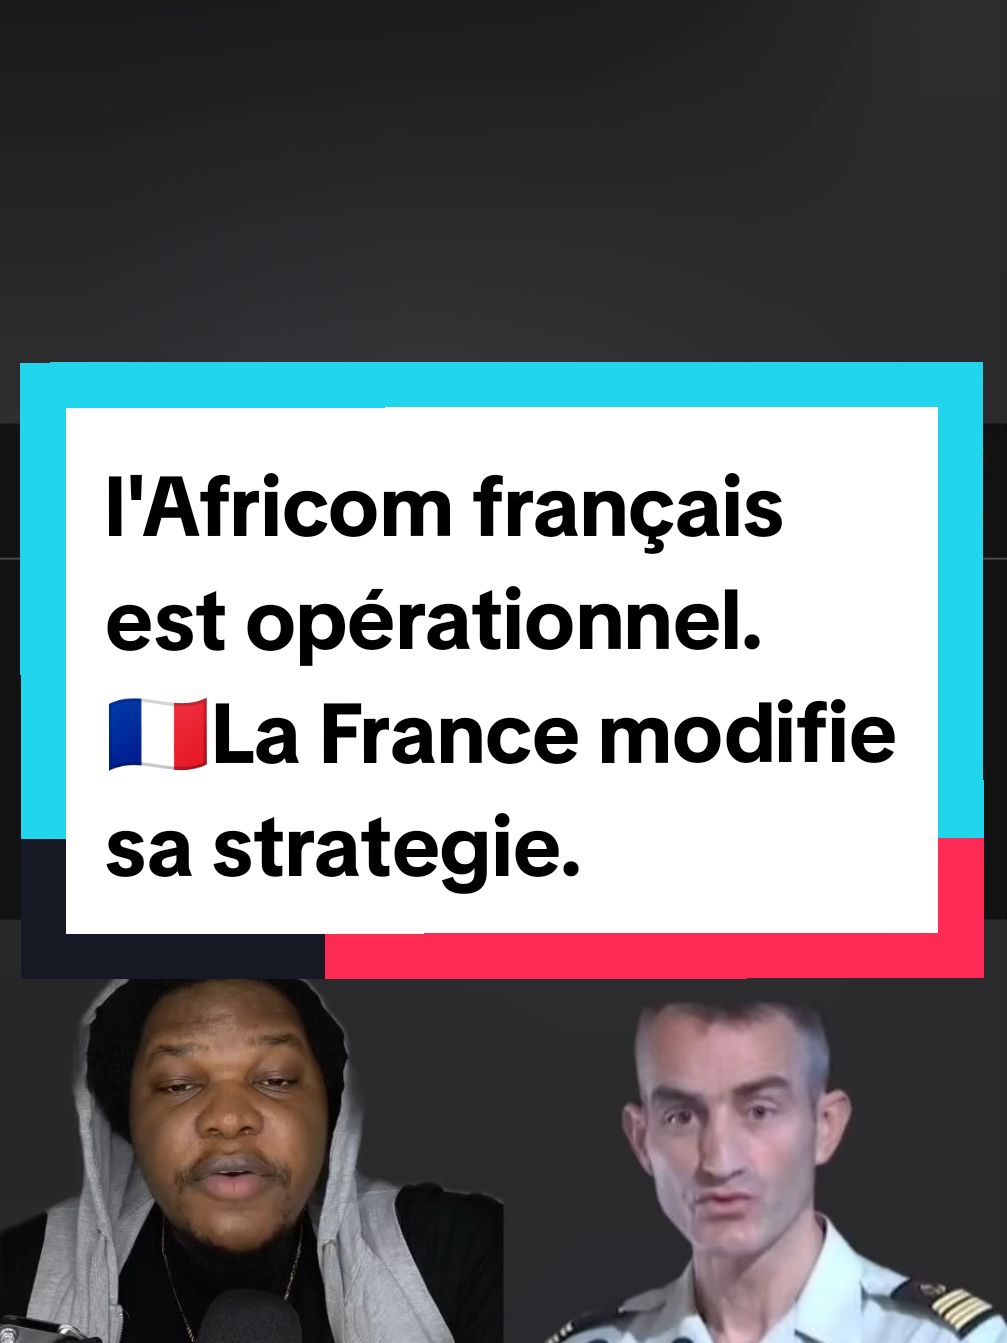 l'Africom français est opérationnel.   🇨🇵La France modifie sa strategie.    #africom #francetiktok #francetiktok🇨🇵 #francetiktok🇫🇷 #macrondemission #OTAN #malitikto🇲🇱🇲🇱malitiktok #russie #poutine #malitiktok🇲🇱🇲🇱malitiktok✊✊✊💪🏼✊ #malitiktok223🇲🇱 #malitiktok🇲🇱🇲🇱malitiktok #malitiktok #macrondemission #burkinafaso #burkinatiktok #niger #europe 